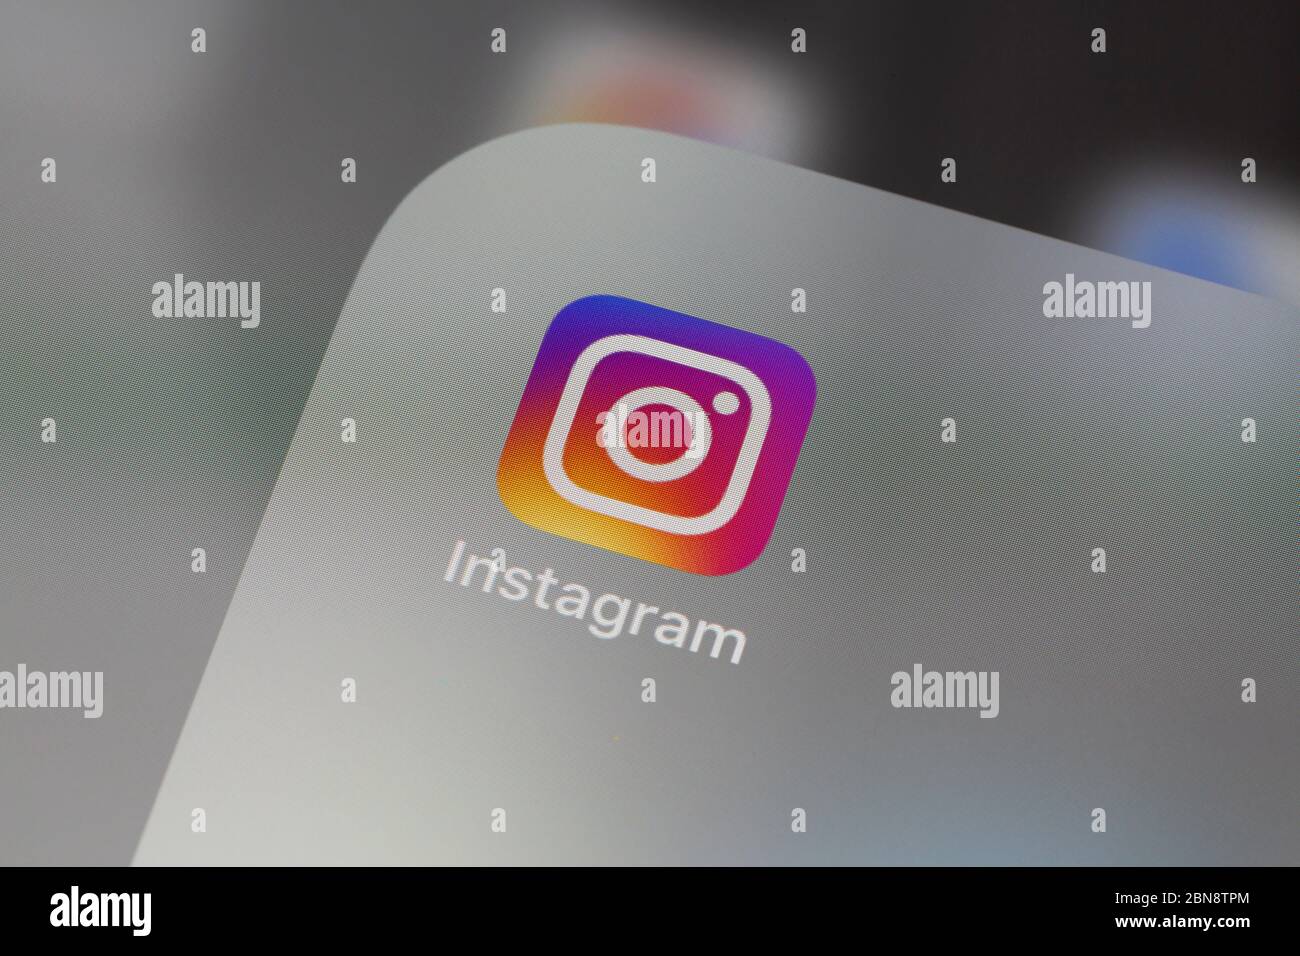 Ostersund, Schweden - 13. Mai 2020: Instagram App Icon. Instagram ist ein amerikanischer Foto- und Video-Sharing-Dienst in sozialen Netzwerken. Stockfoto